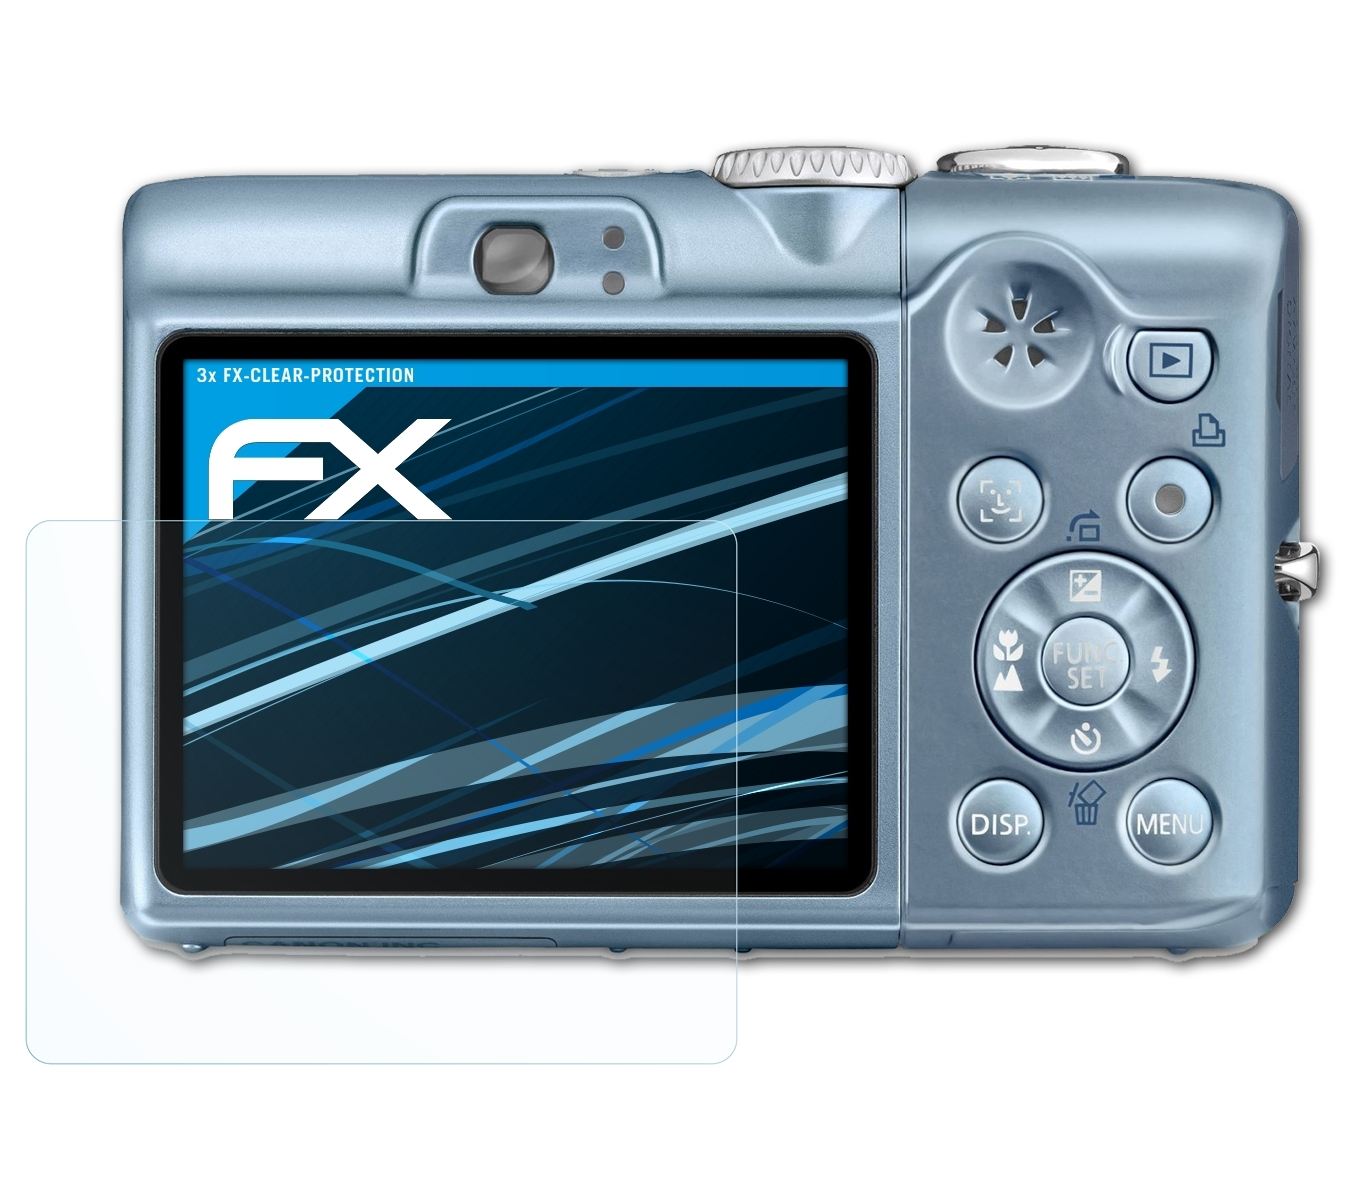 IS) FX-Clear 3x Canon A1100 Displayschutz(für ATFOLIX PowerShot